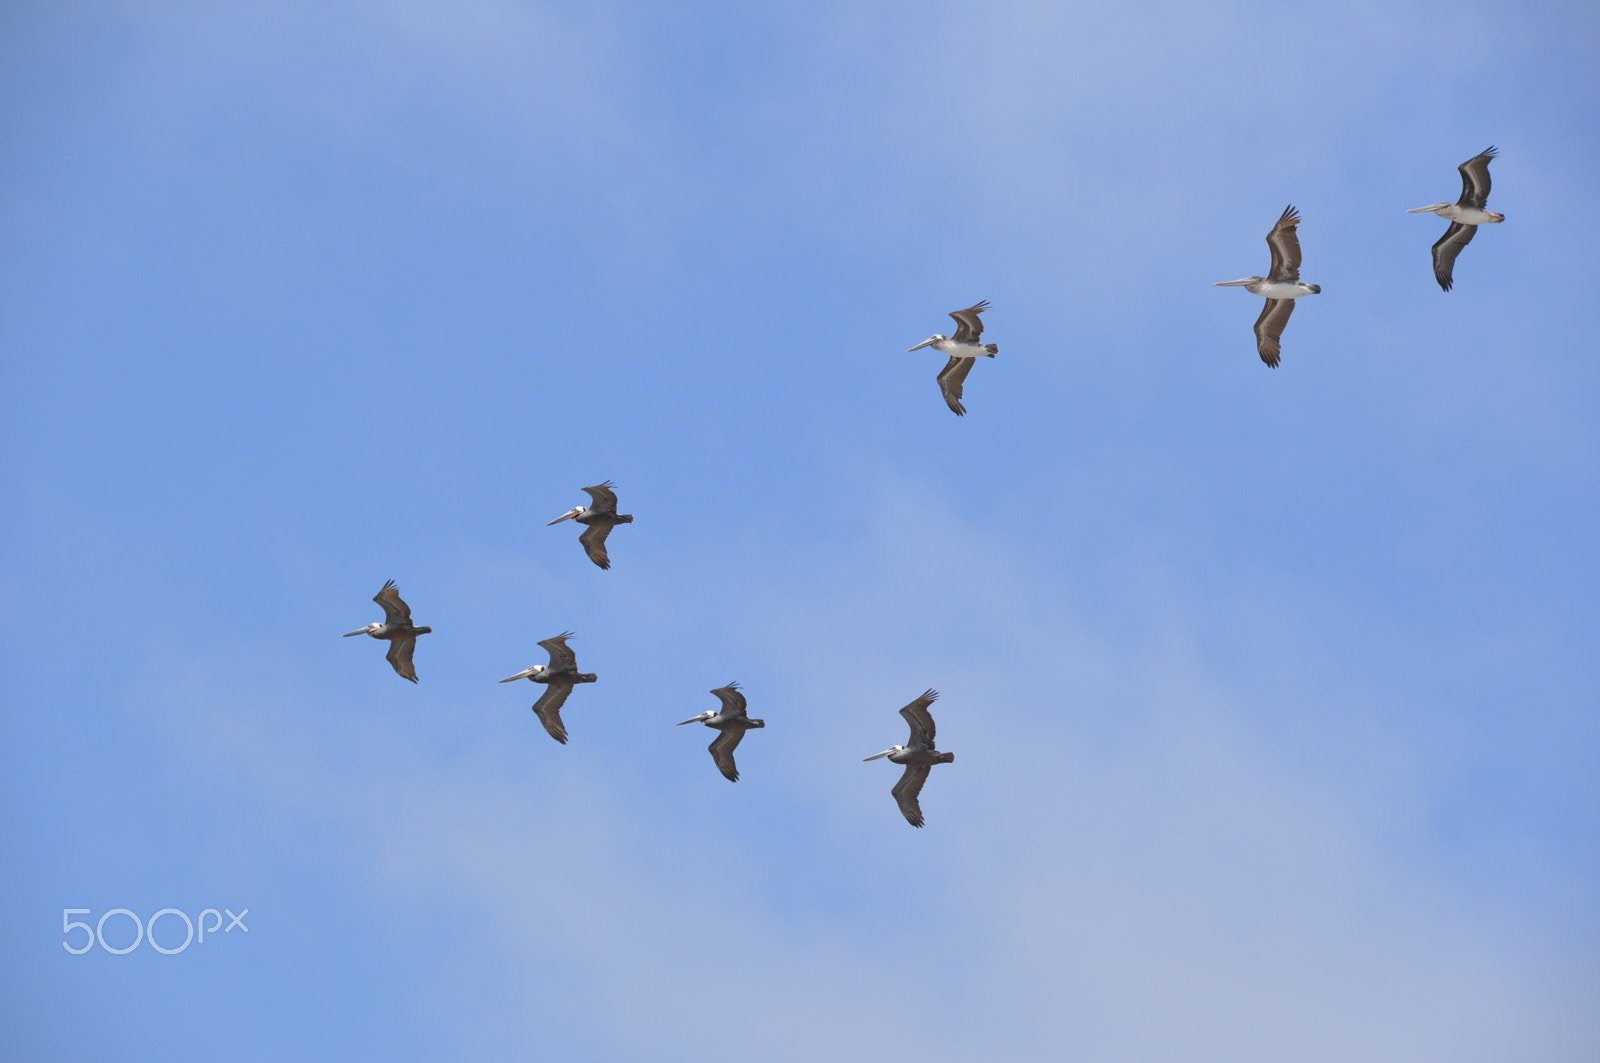 Nikon AF-S DX Nikkor 18-300mm F3.5-6.3G ED VR sample photo. Brown pelicans flying missing man formation photography